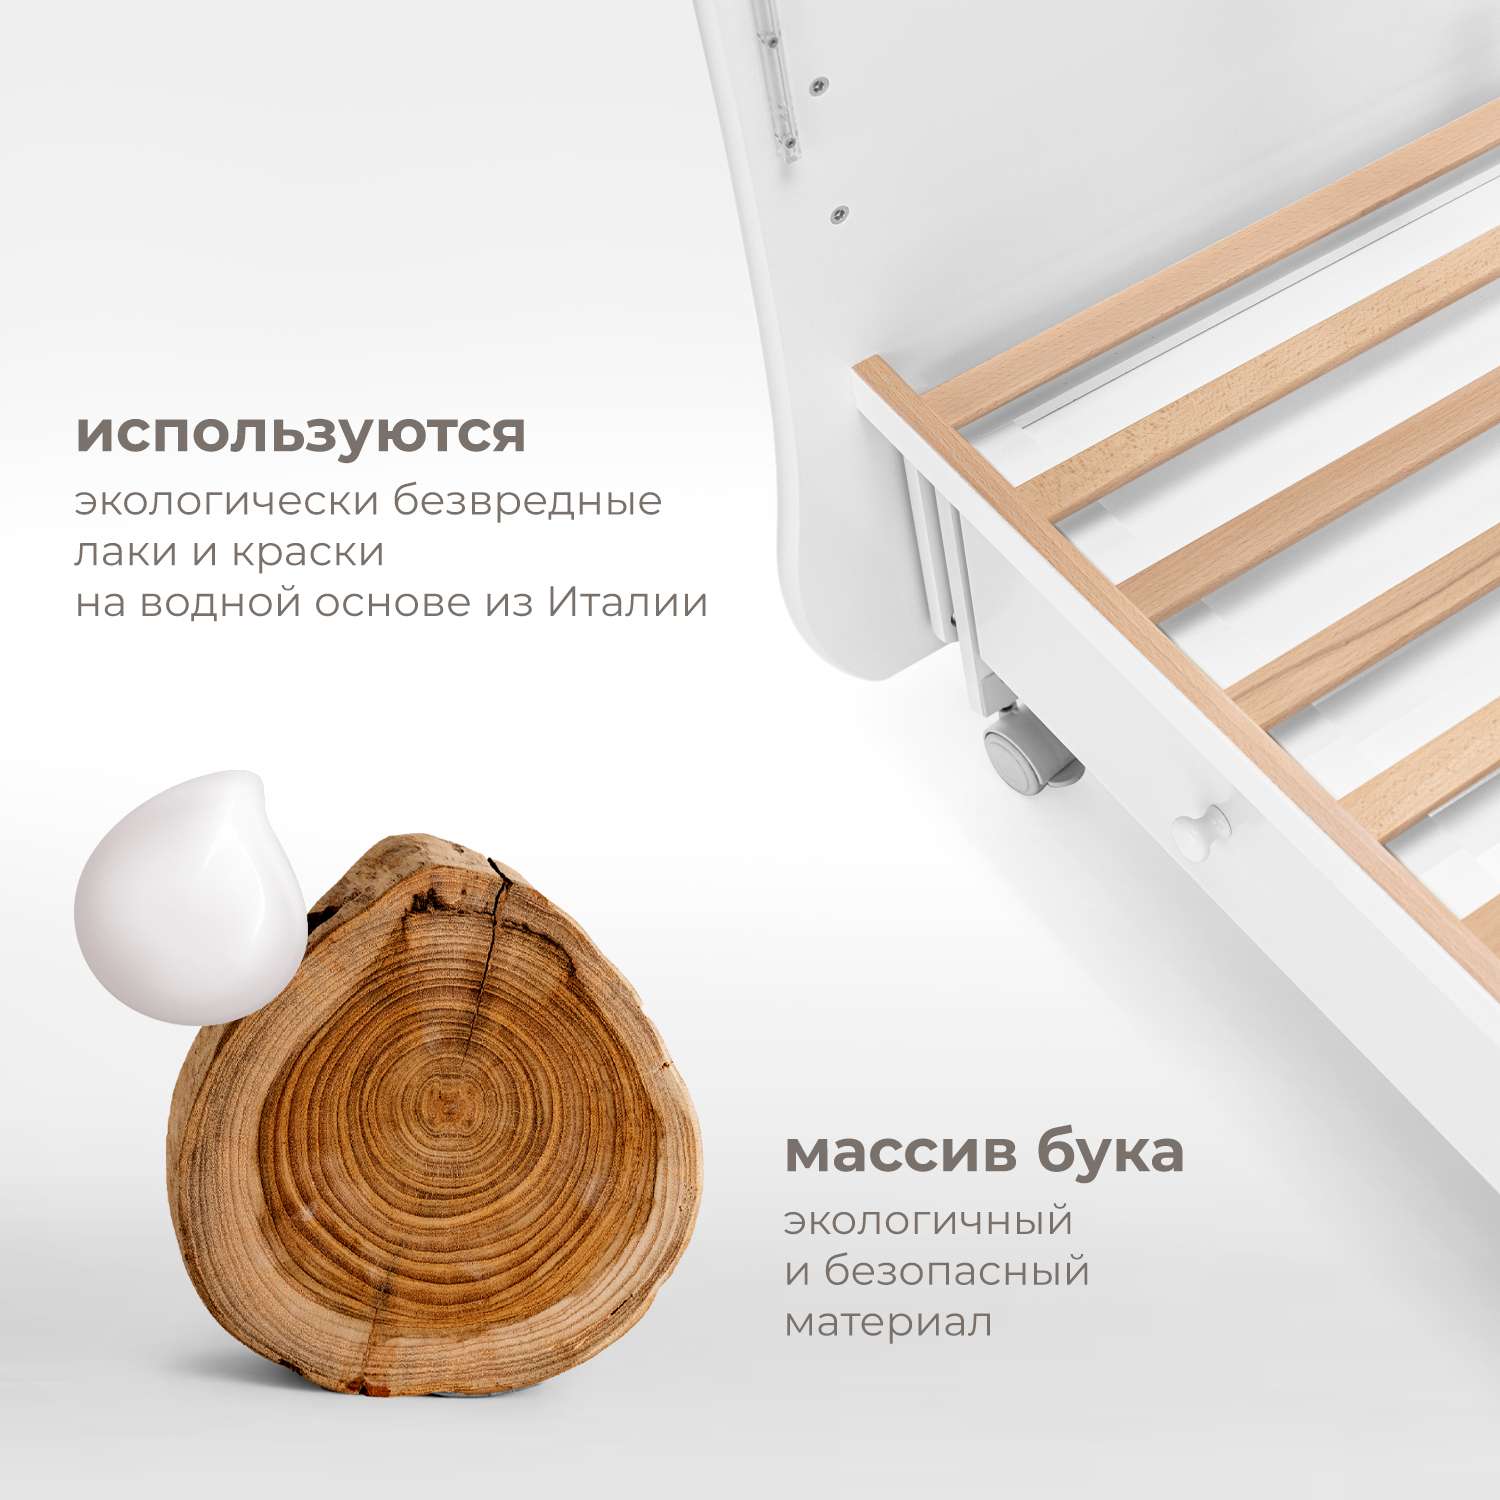 Детская кроватка Nuovita прямоугольная, поперечный маятник (белый) - фото 7